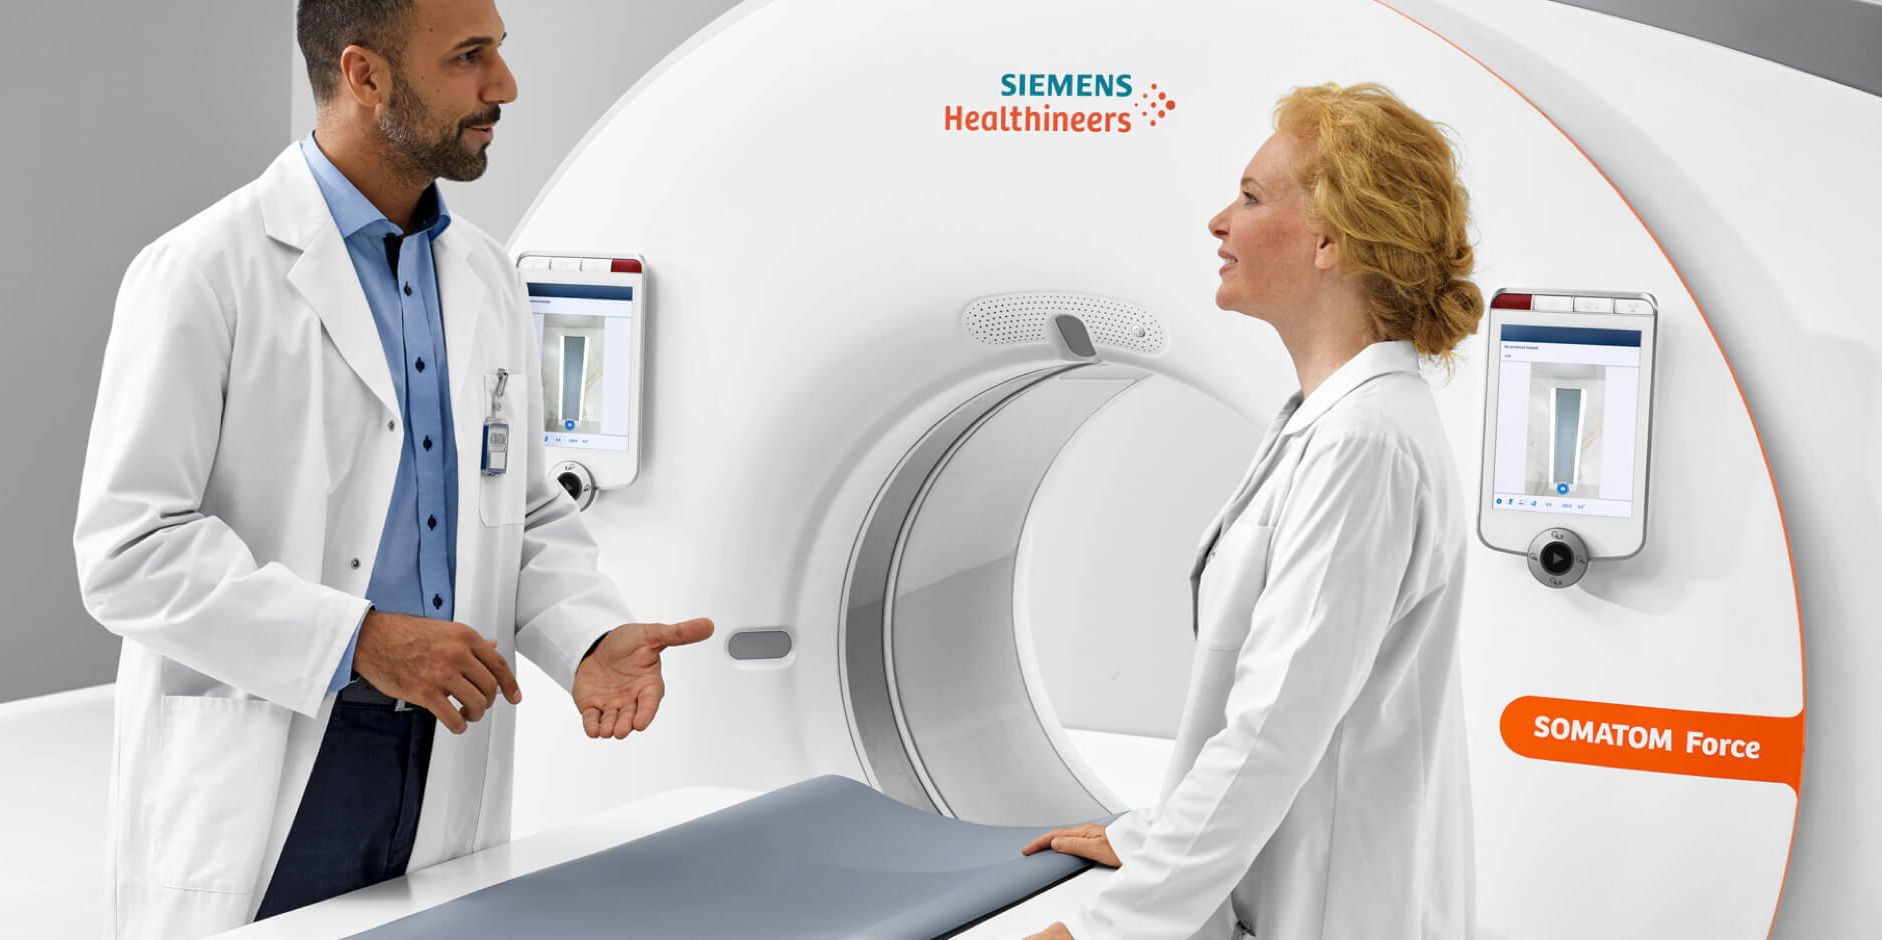 Torenhoge waardering Siemens Healthineers vraagt om ongelukken